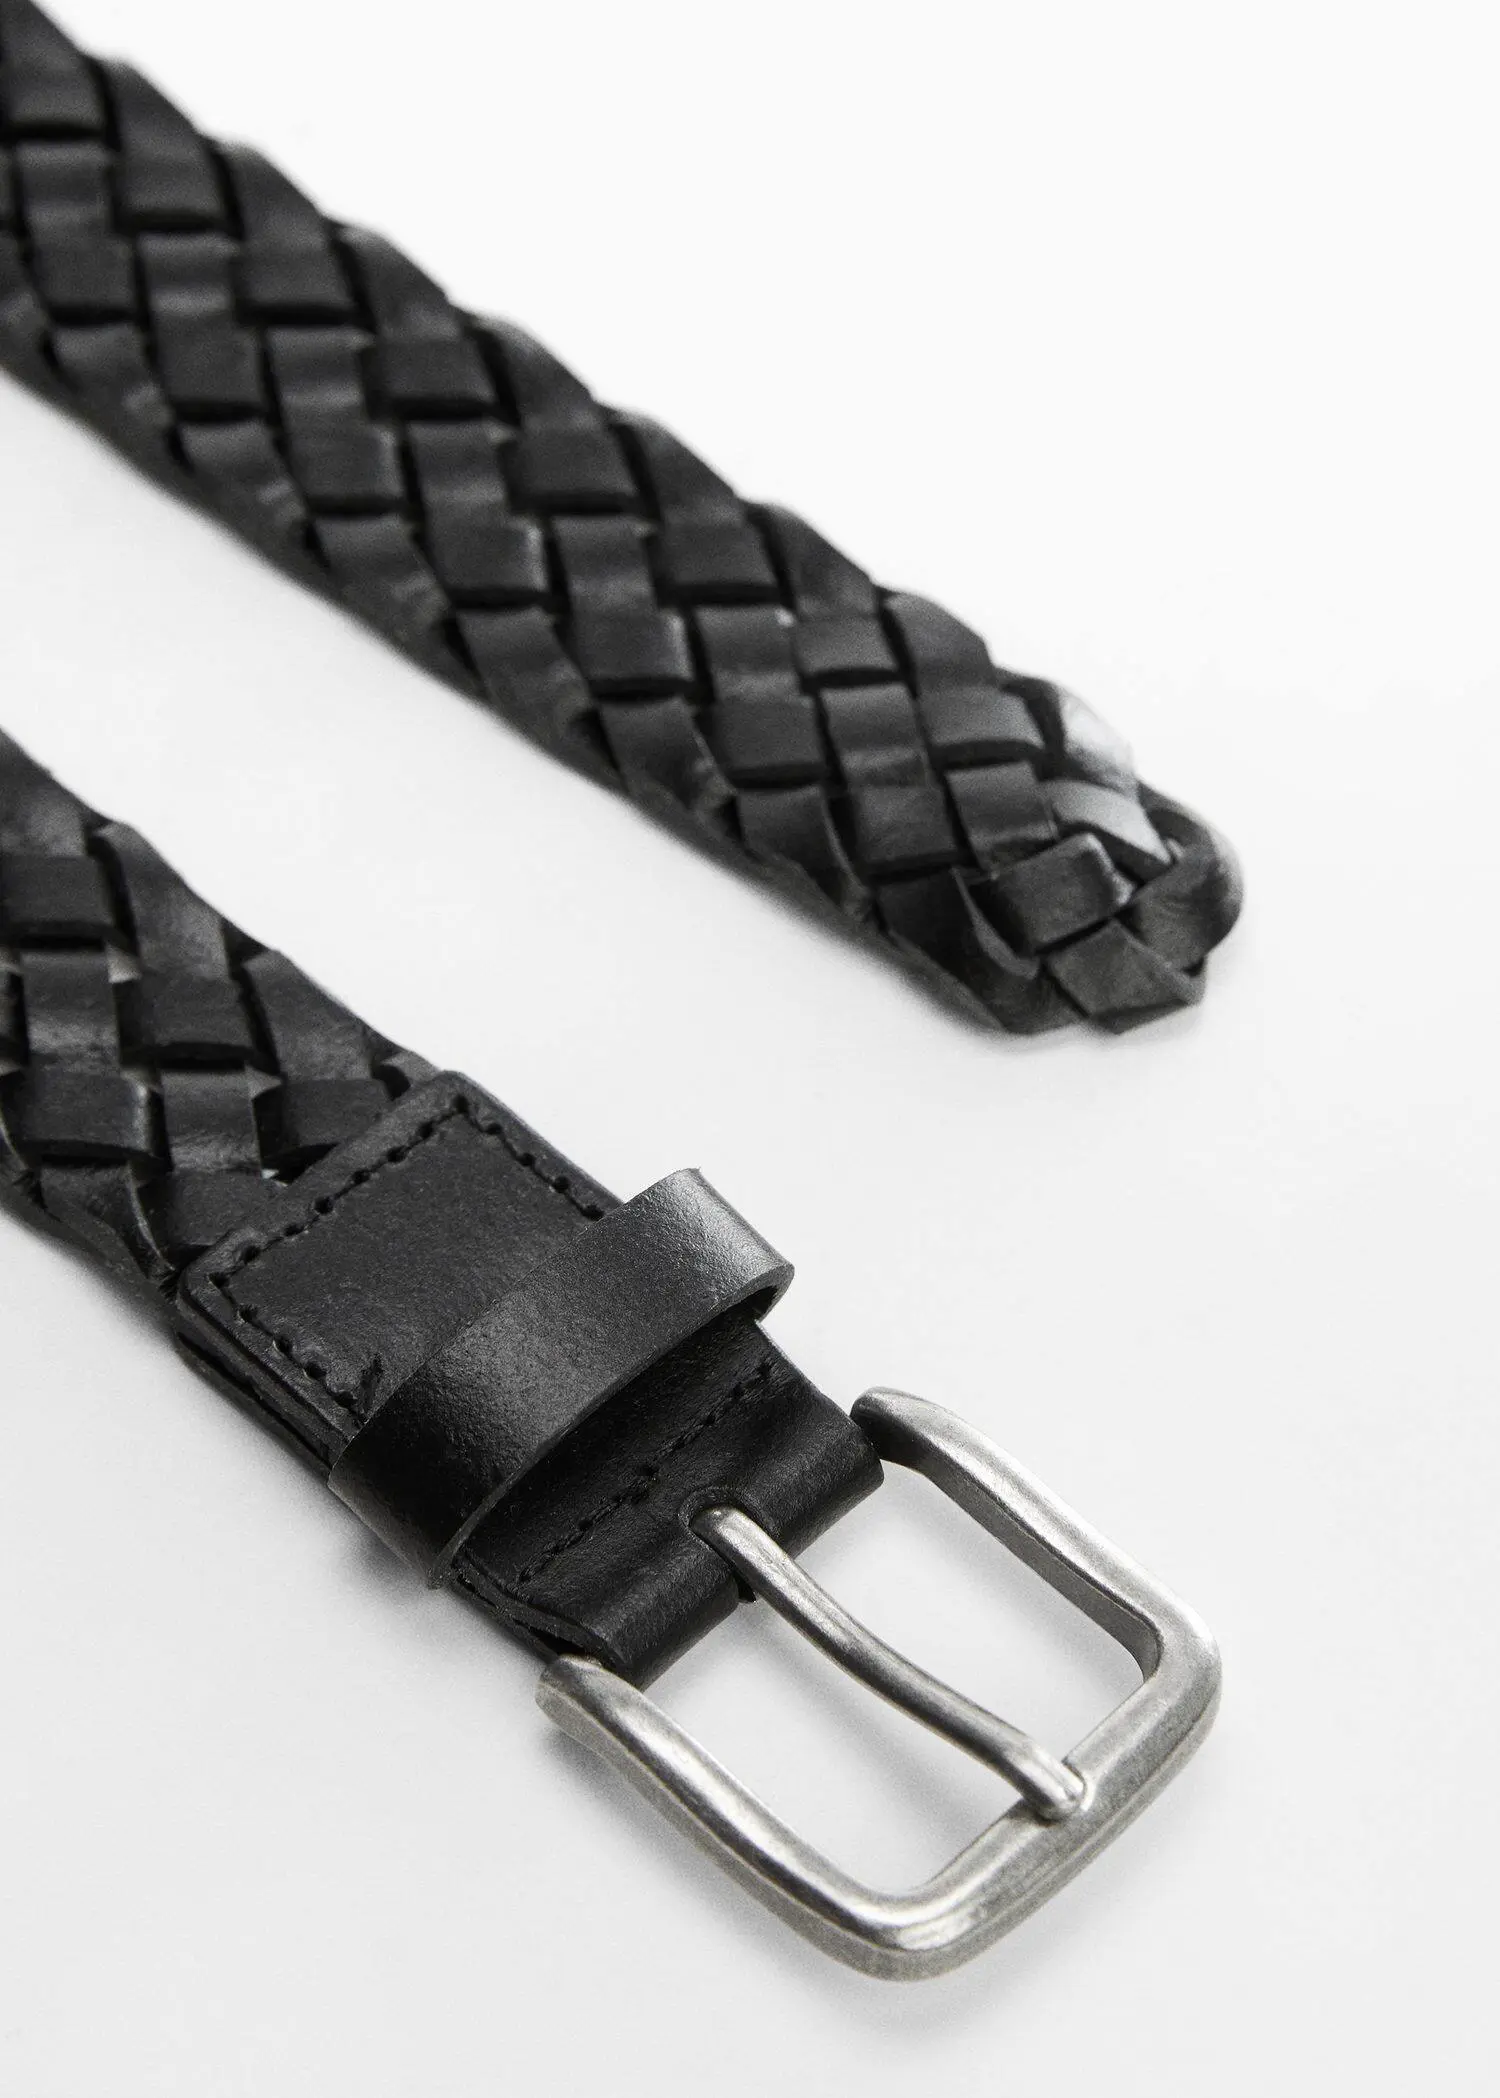 Mango Braided leather belt. 3